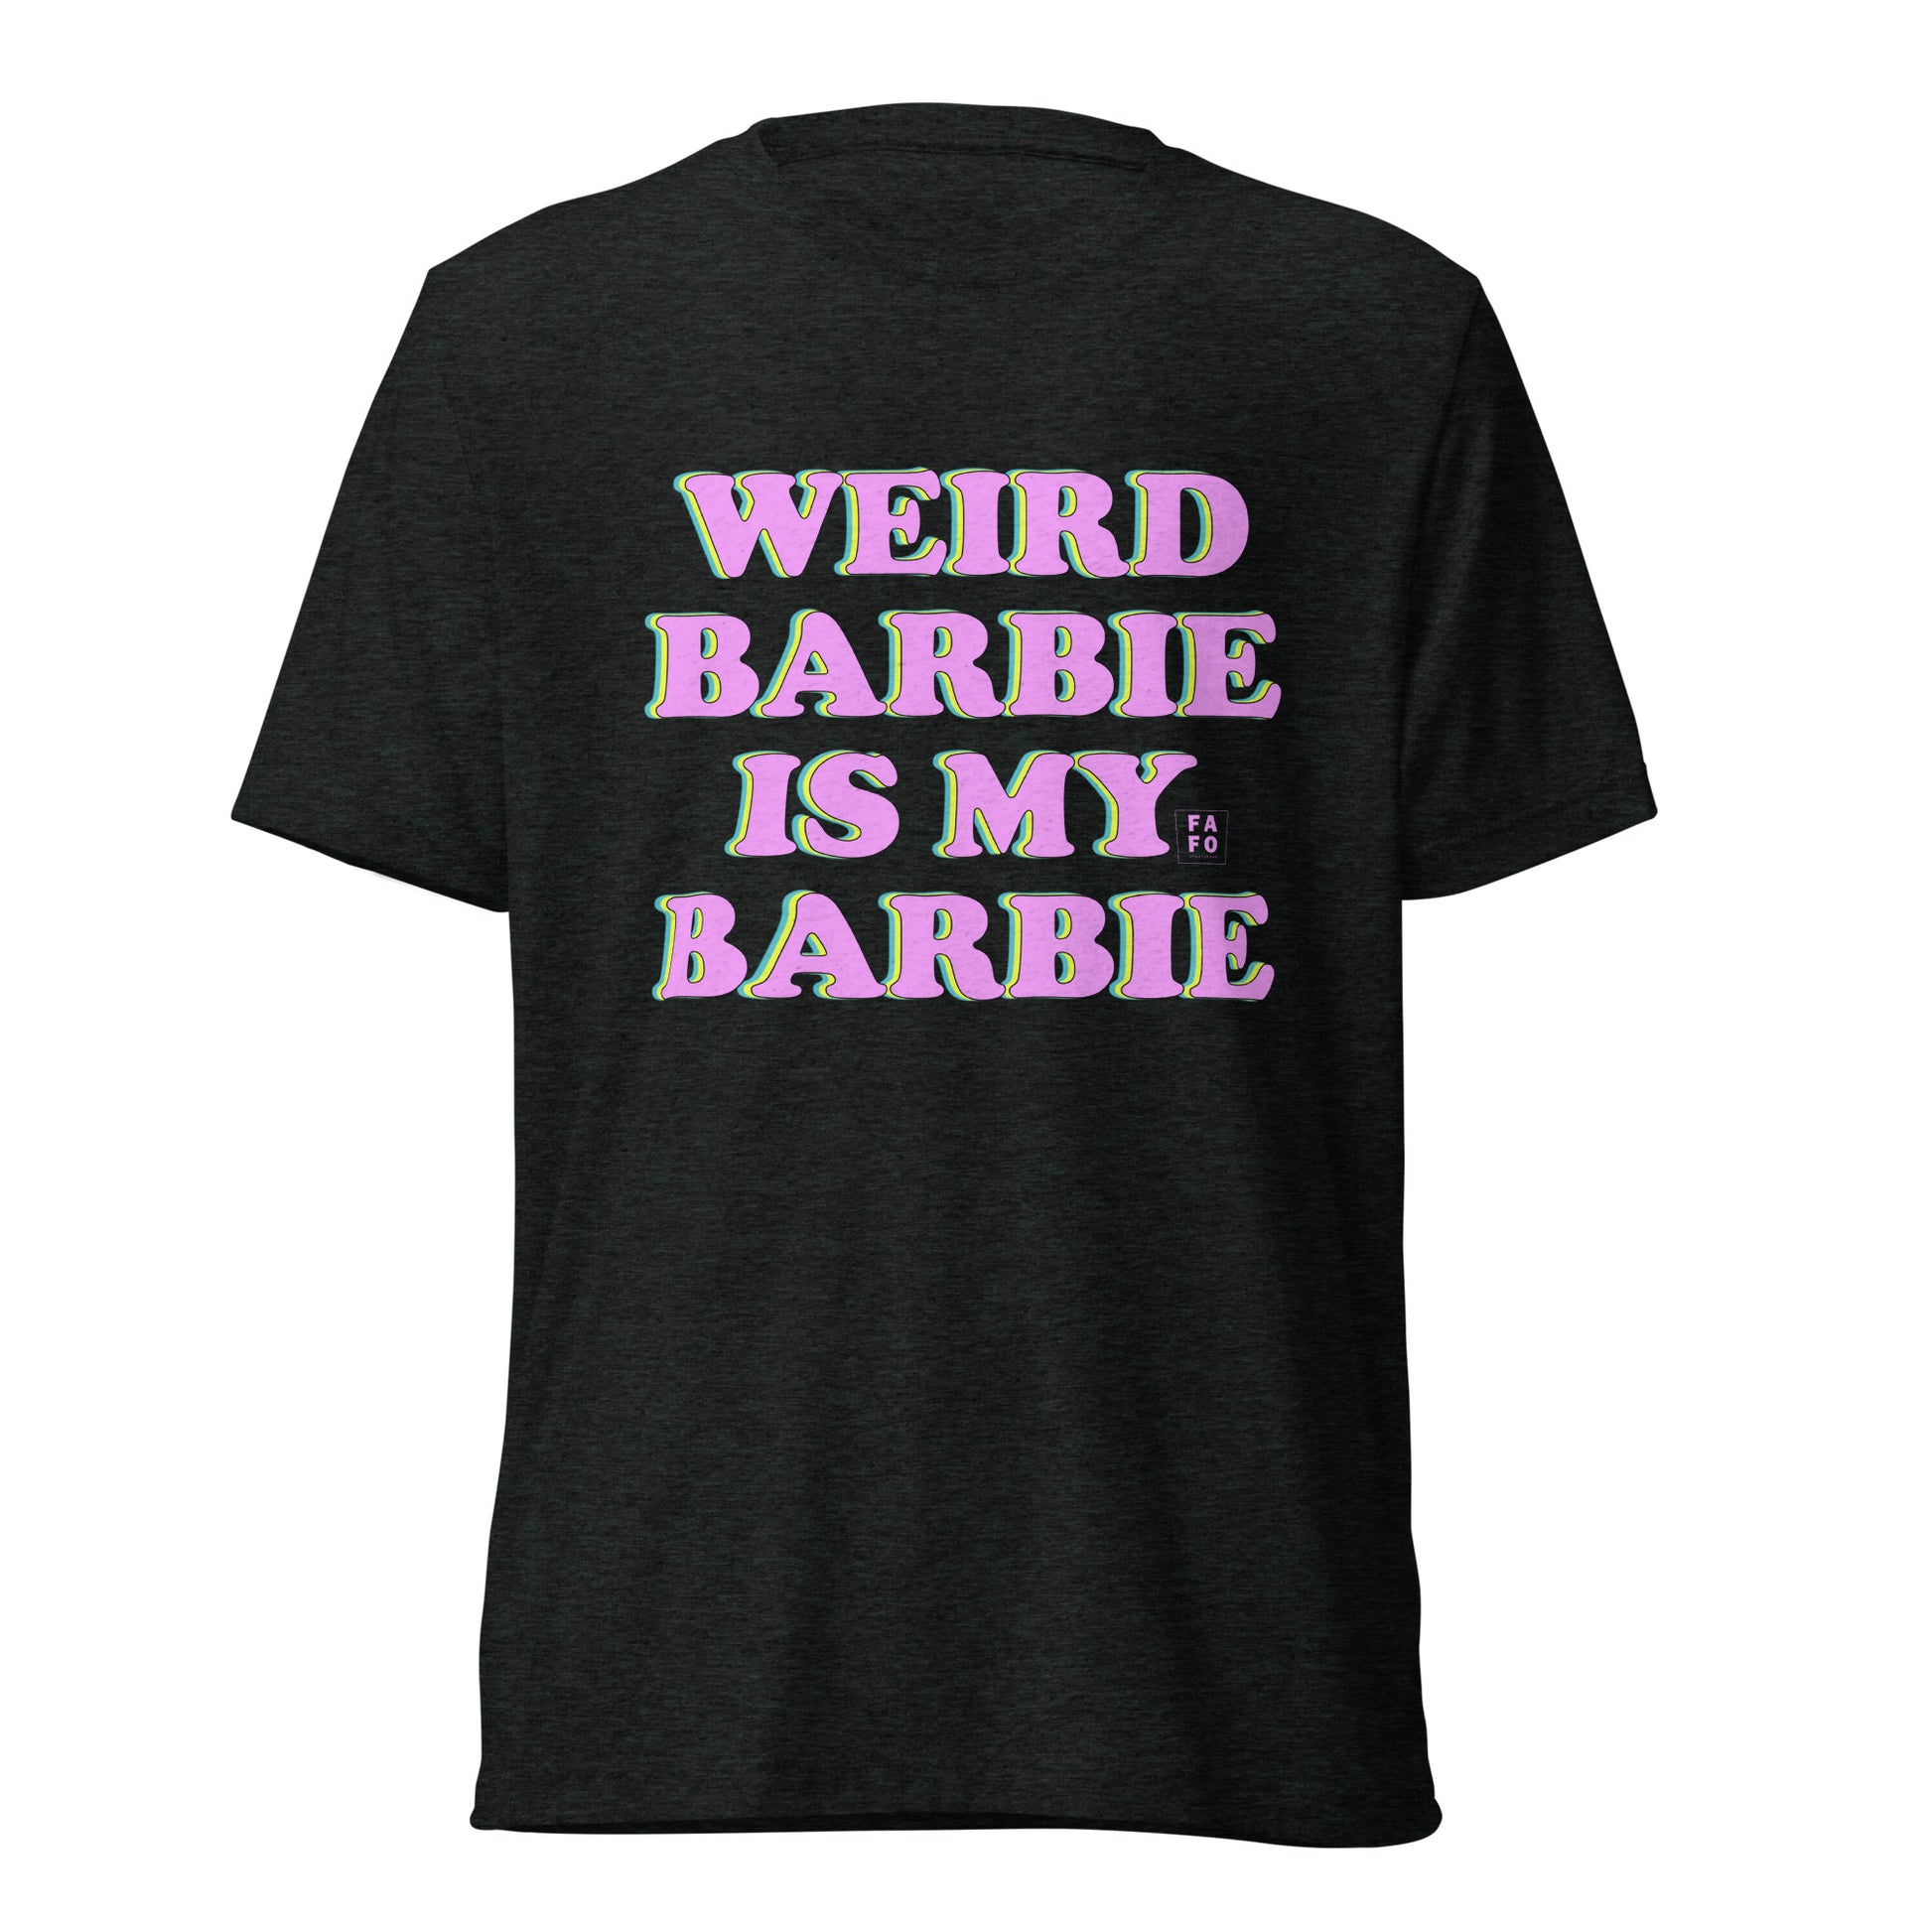 Women's Tri-blend Jersey Tee - Weird Barbie is My Barbie - FAFO Sportswear